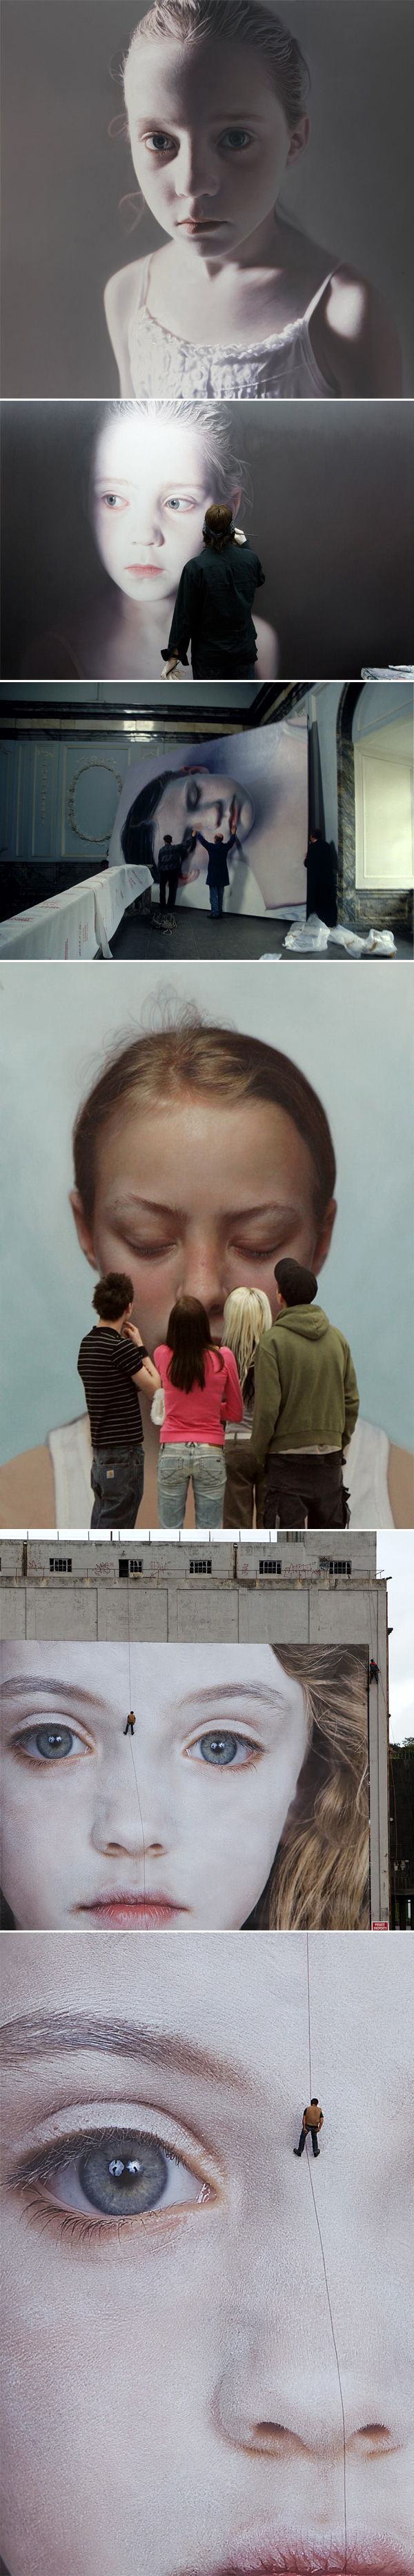 Gottfried Helnwein | arte hiper-realista